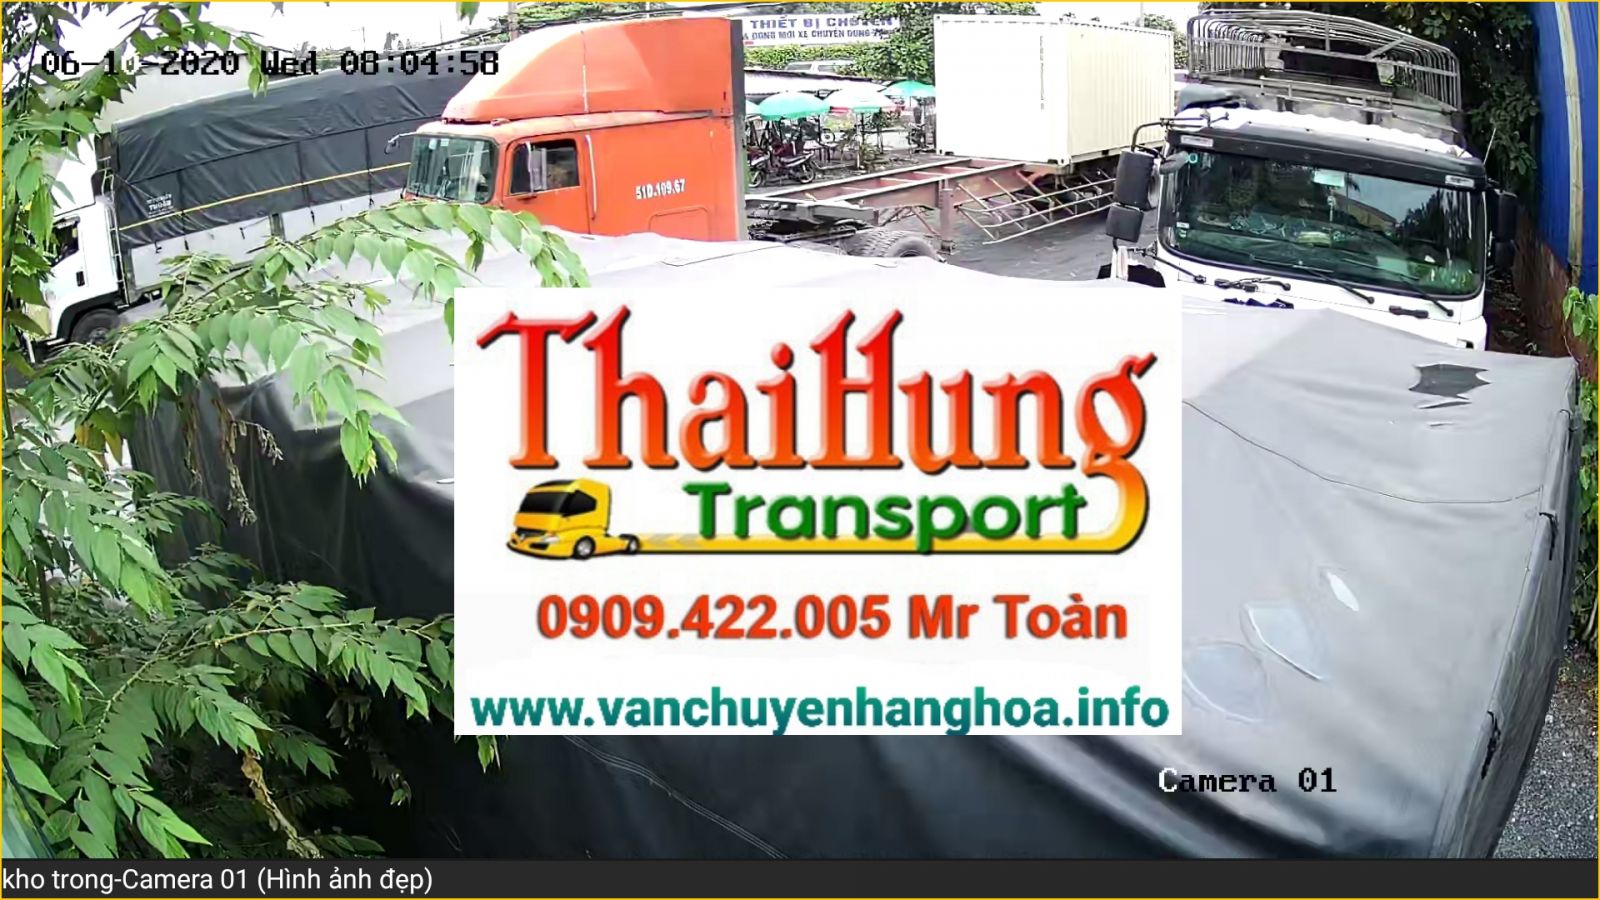 Vận chuyển hàng lẻ, hàng ghép, hàng nguyên xe, nguyên container từ Tp Hồ Chí Minh đi Hưng Yên